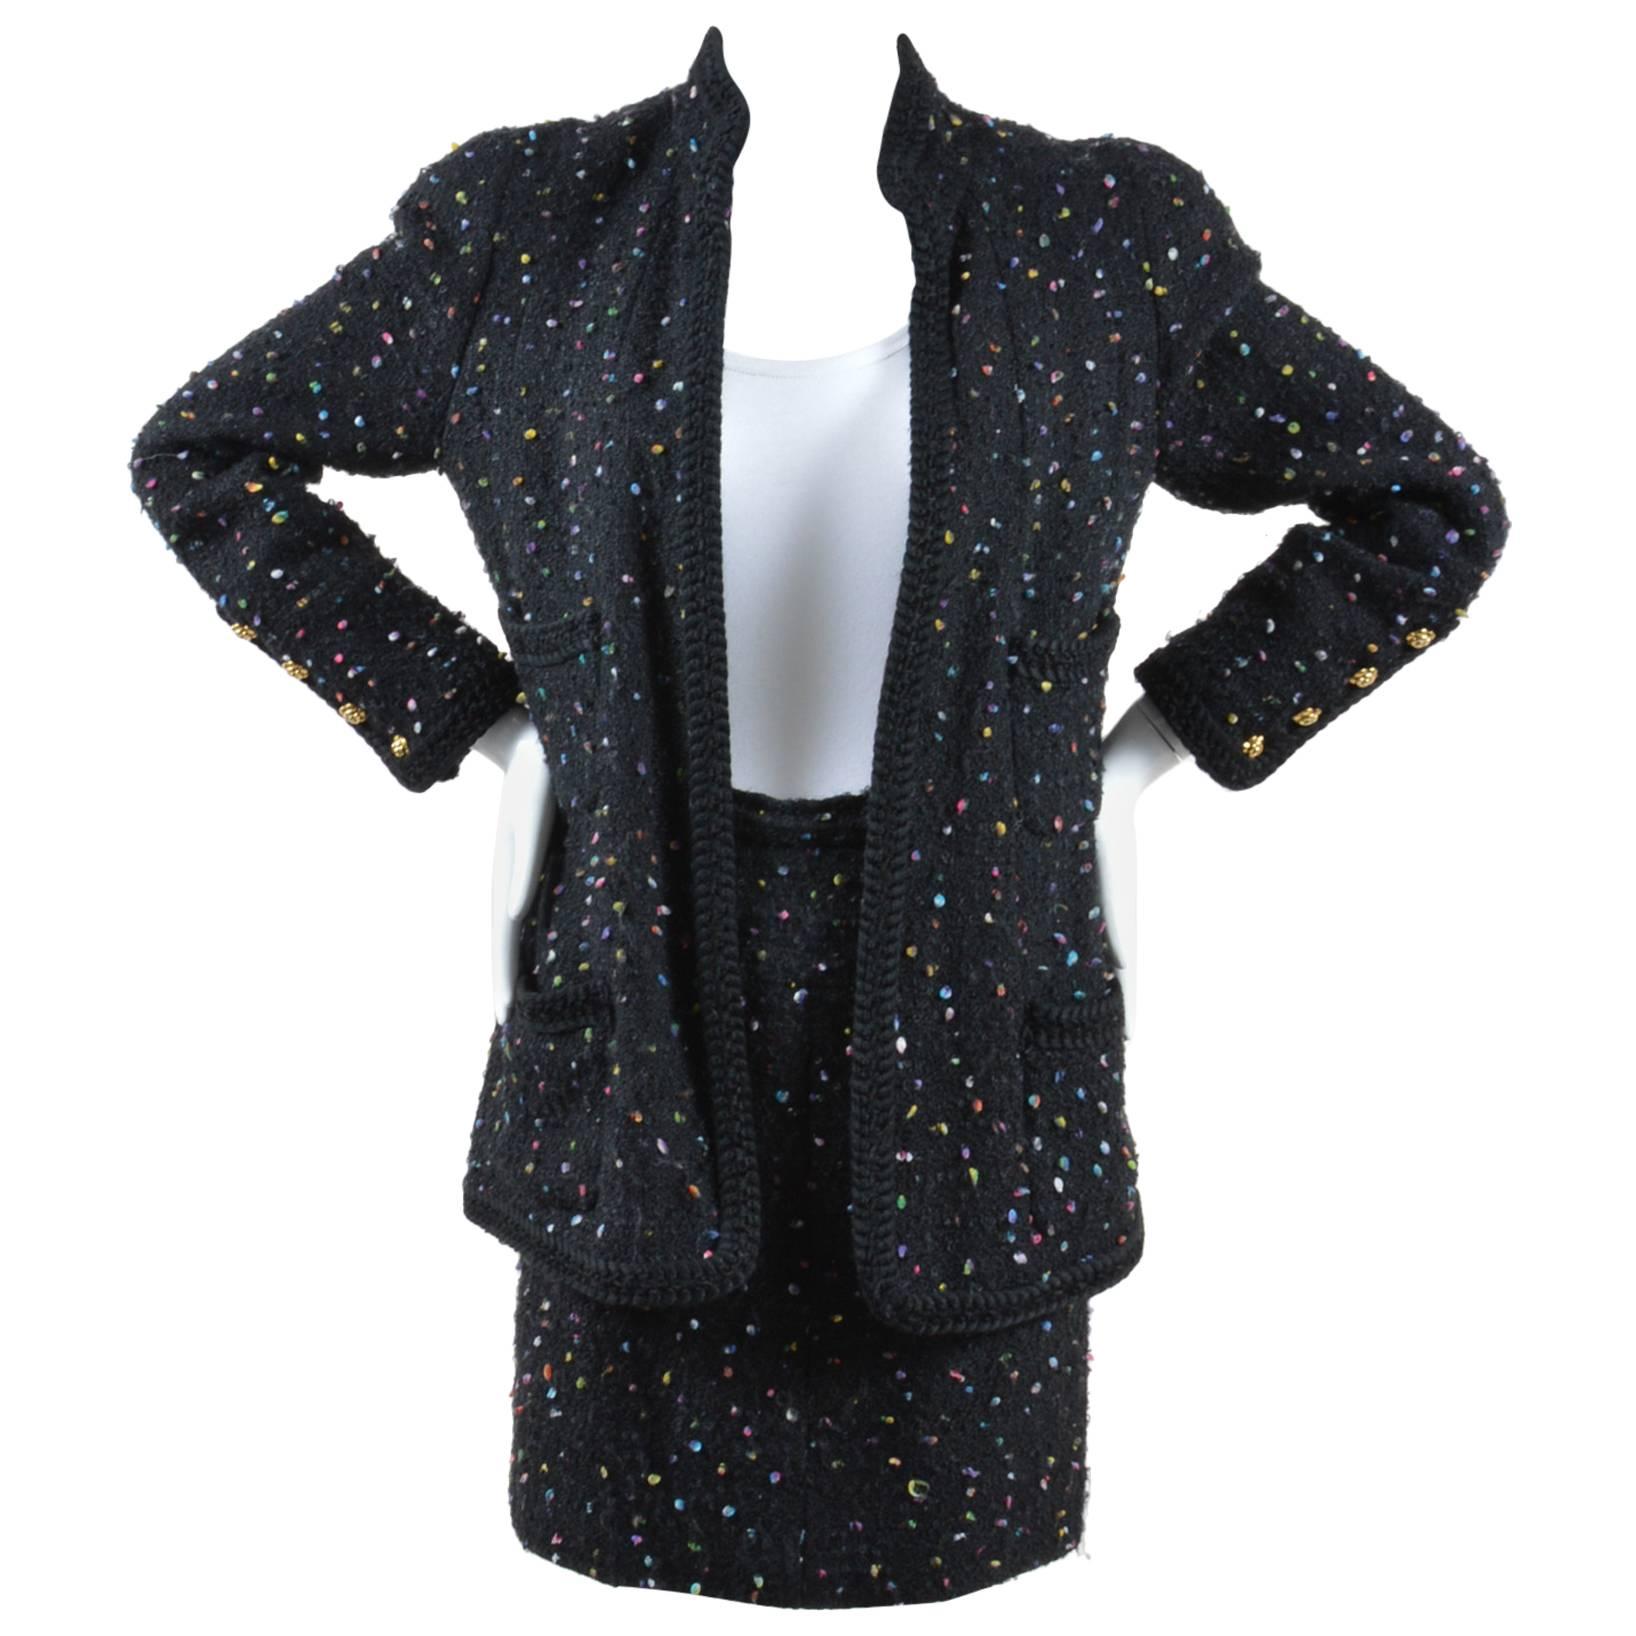 Chanel Black Multicolor Speckled Tweed Long Sleeve Jacket Pencil Skirt Suit Set For Sale